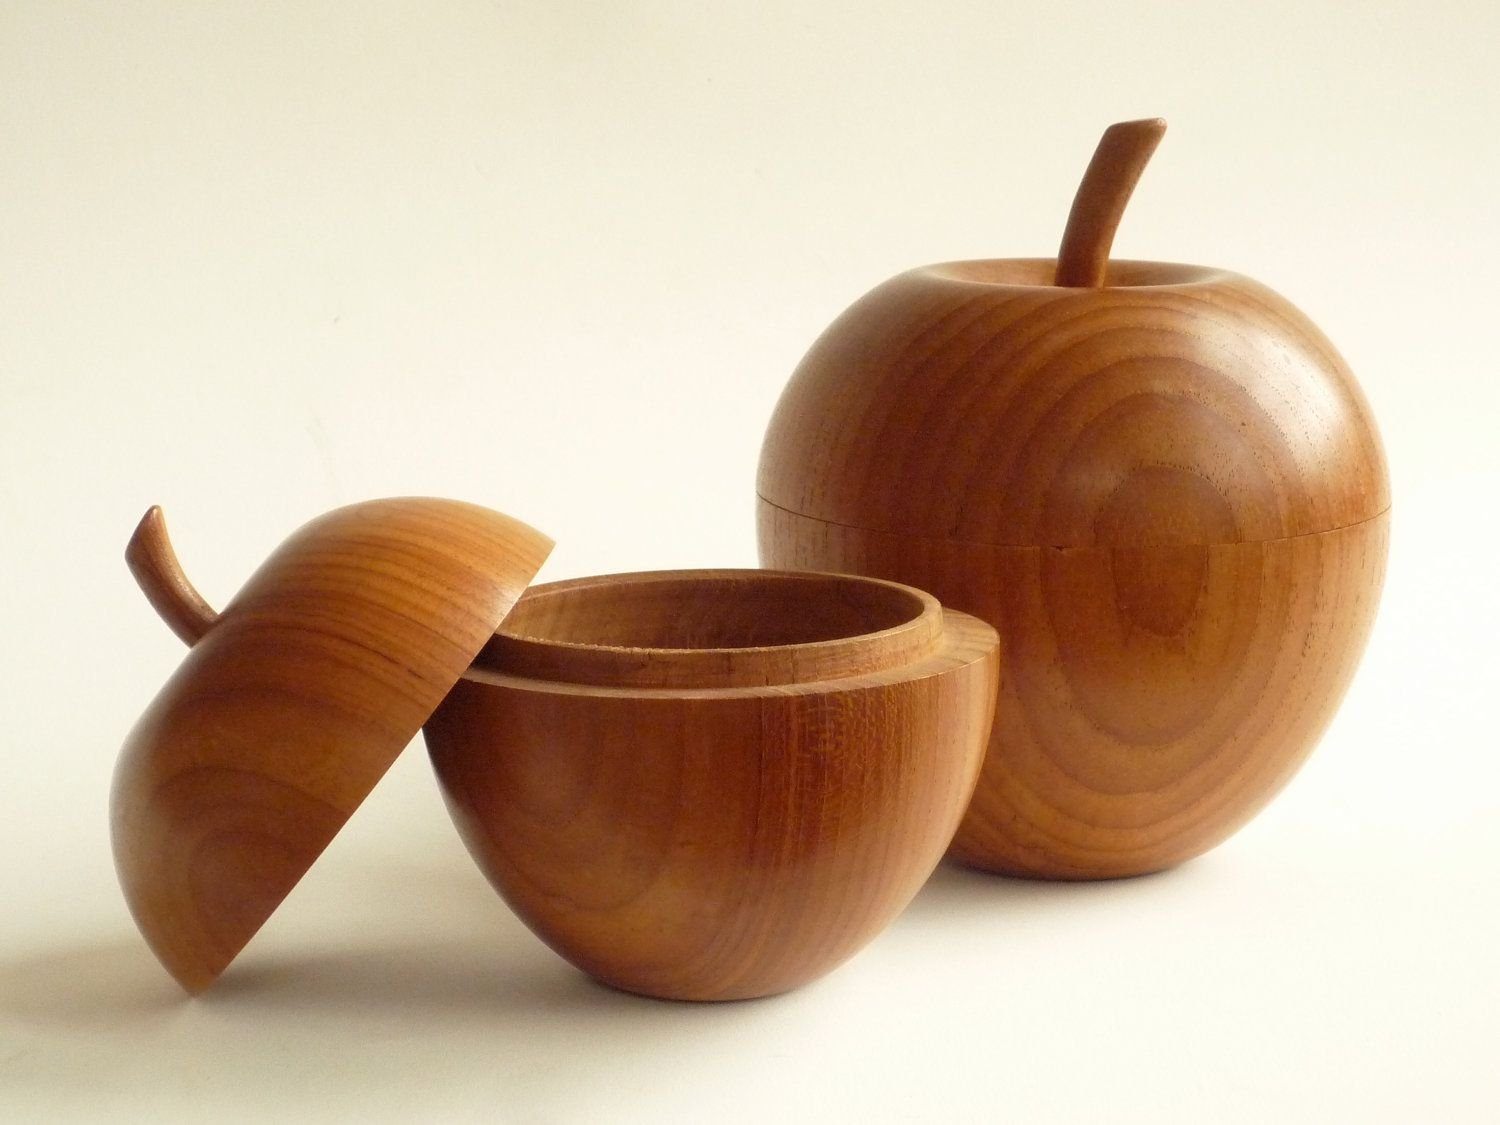 Wooden купить. Посуда из дерева. Современная деревянная посуда. Изделия из древесины. Точеная деревянная посуда.